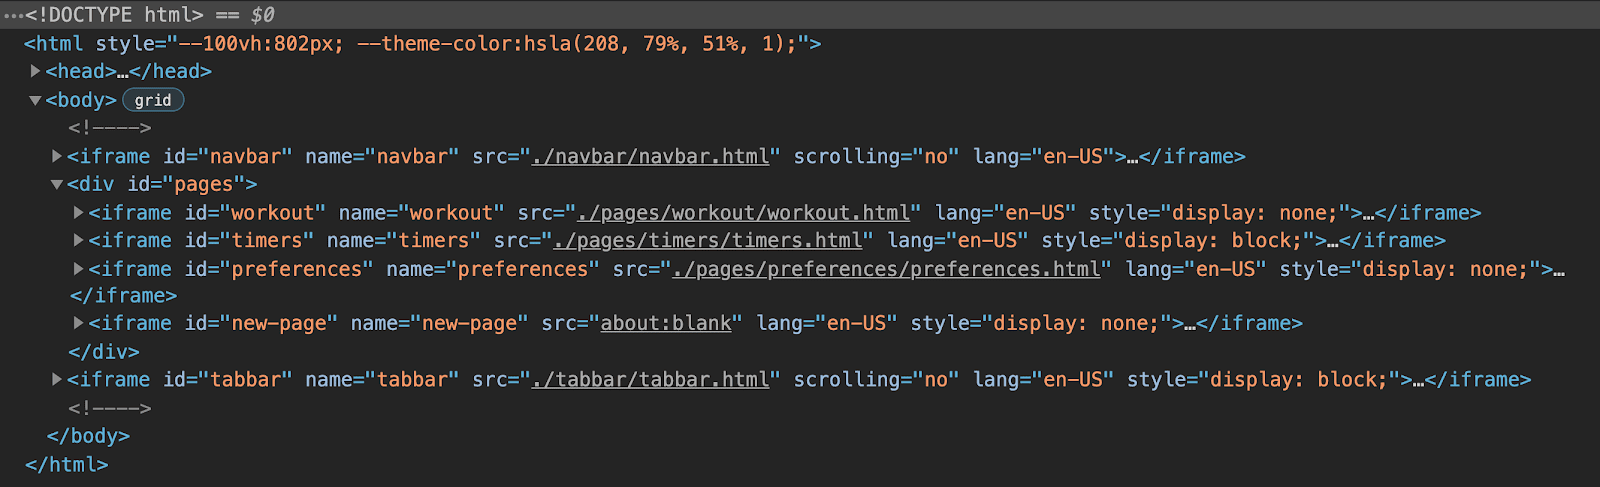 ऐप्लिकेशन के एचटीएमएल स्ट्रक्चर का Chrome DevTools व्यू यह दिखा रहा है कि इसमें छह iframe हैं: एक नेविगेशन बार के लिए, एक टैबबार के लिए और ऐप्लिकेशन के हर पेज के लिए तीन ग्रुप किए गए iframe, जिसमें डाइनैमिक पेजों के लिए फ़ाइनल प्लेसहोल्डर iframe शामिल है.